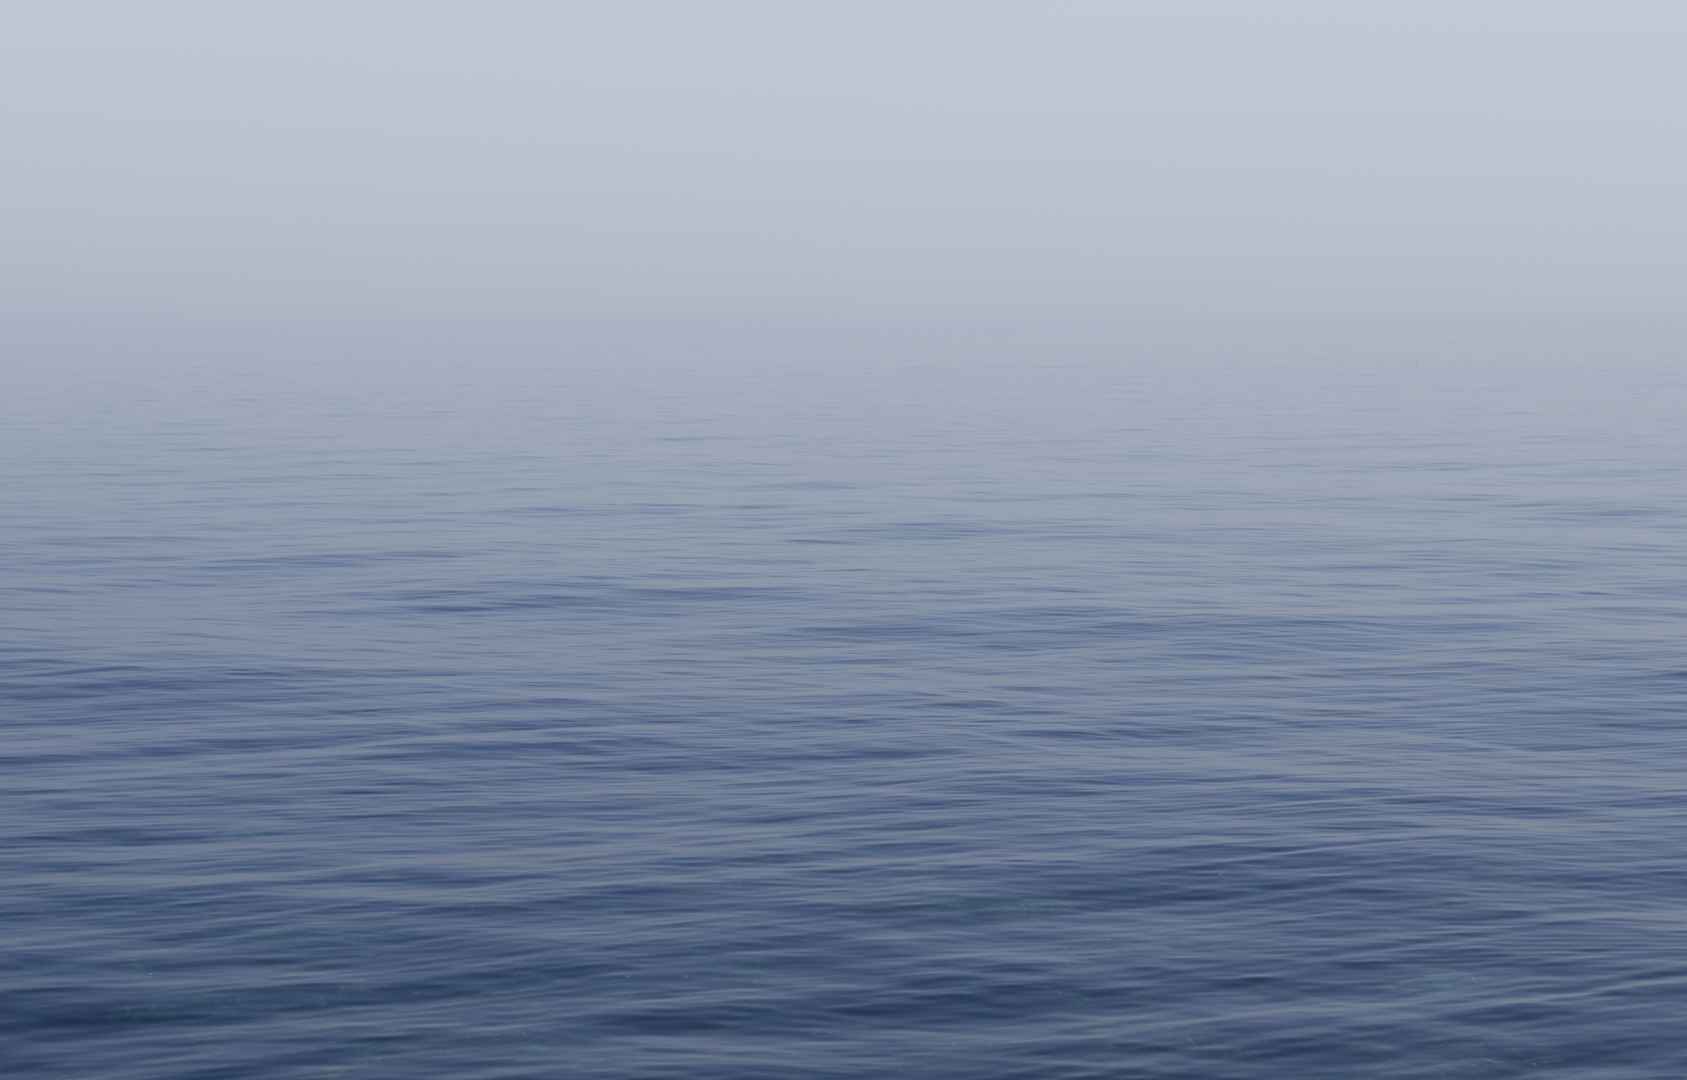 寂静的大海图片